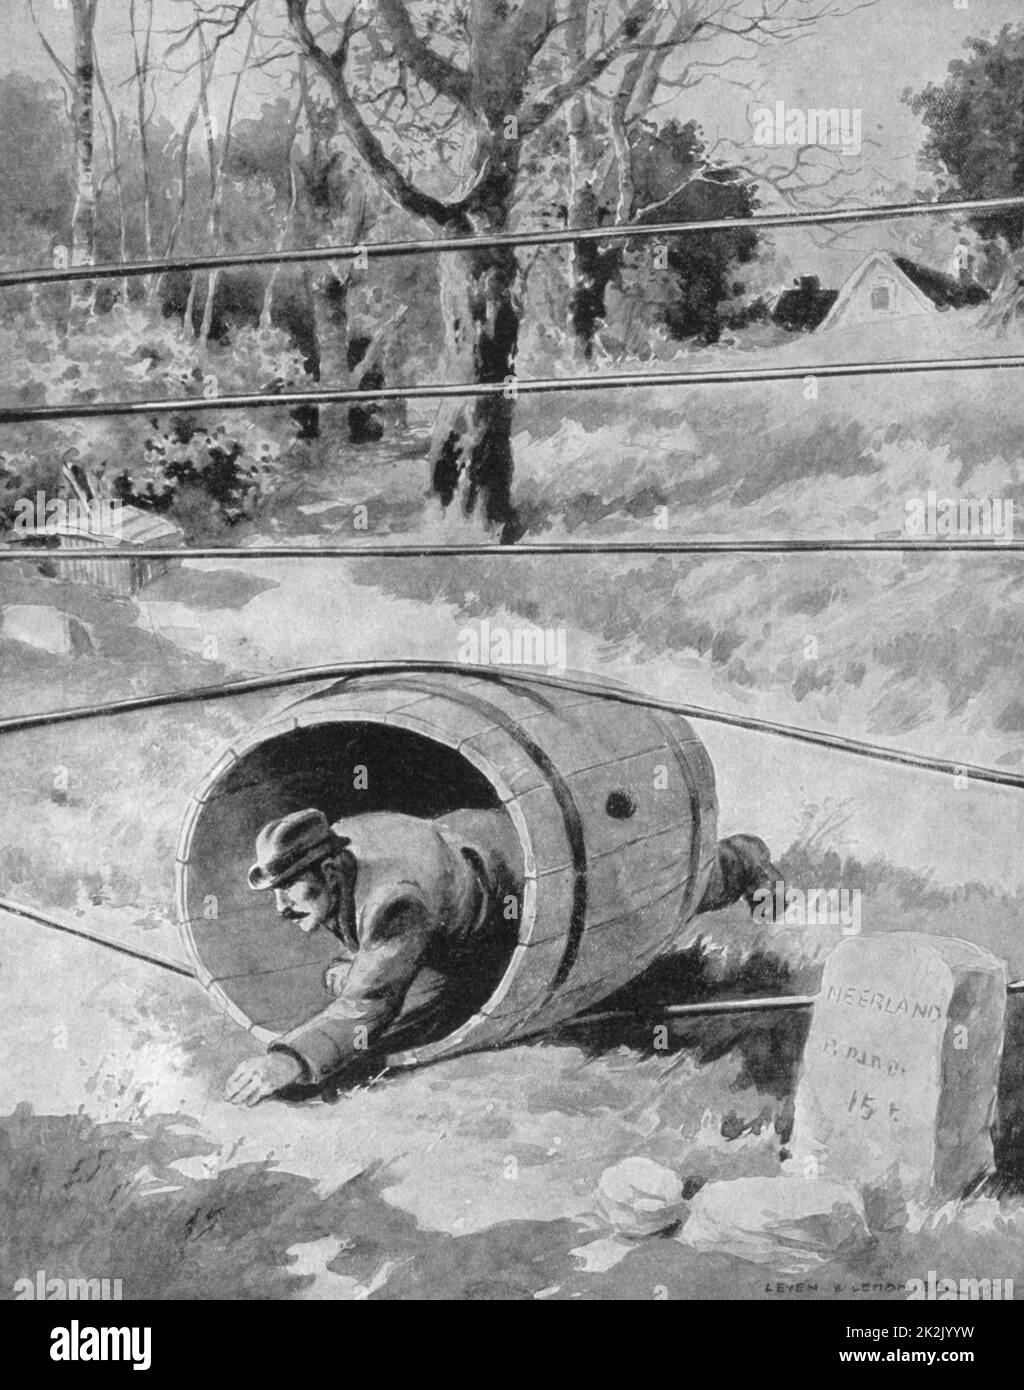 Der erste Weltkrieg 1914-1918: die Deutschen errichtet eine elektrifizierte Zaun zwischen besetzten Belgien und Holland. Dieses Faß war einer der genialen Methoden, die verwendet werden, um die Grenze sicher zu überqueren. "Le Pays de France', den 2. September 1915. Stockfoto